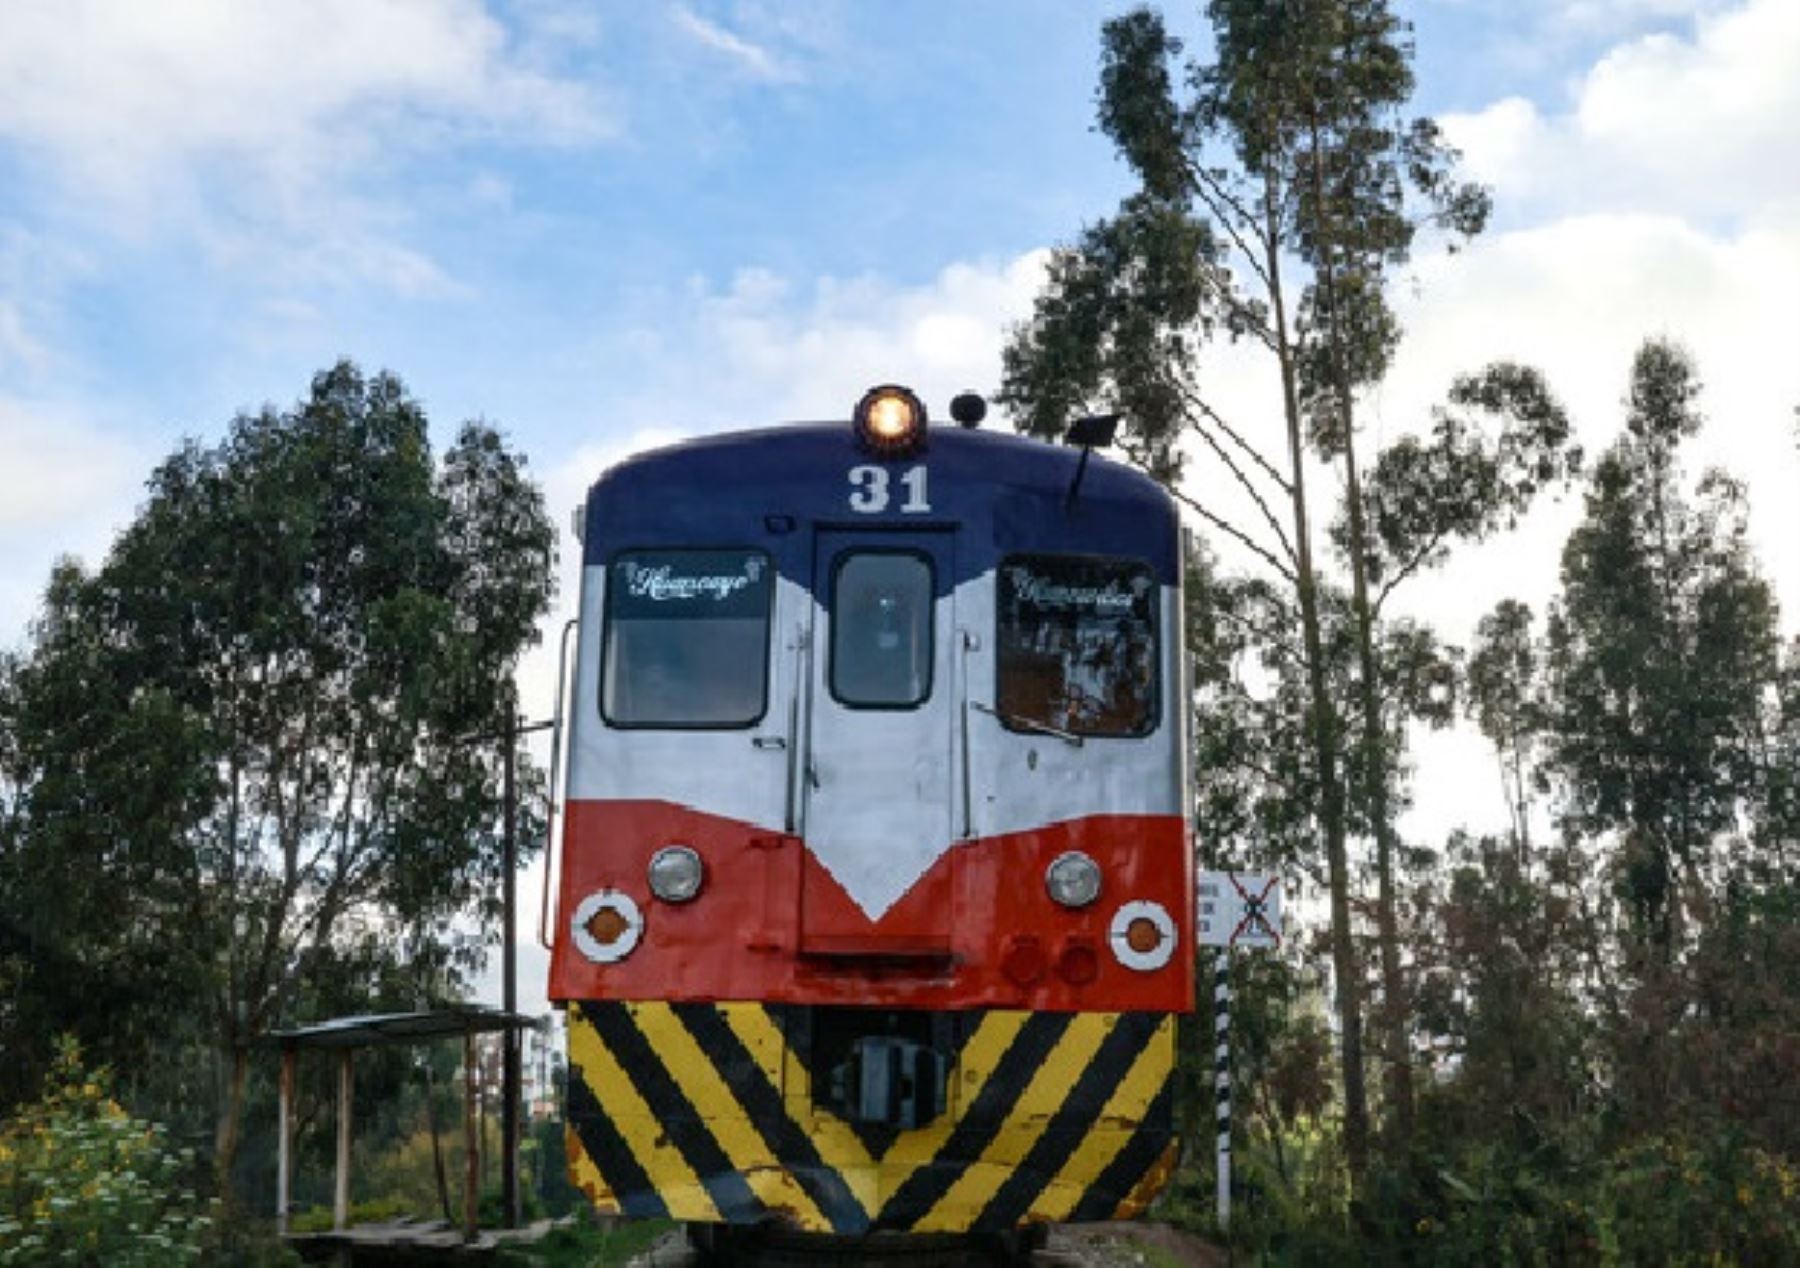 En menos de 45 días el Tren Macho transportó a más de 6,000 pasajeros de forma gratuita, destacó el MTC.